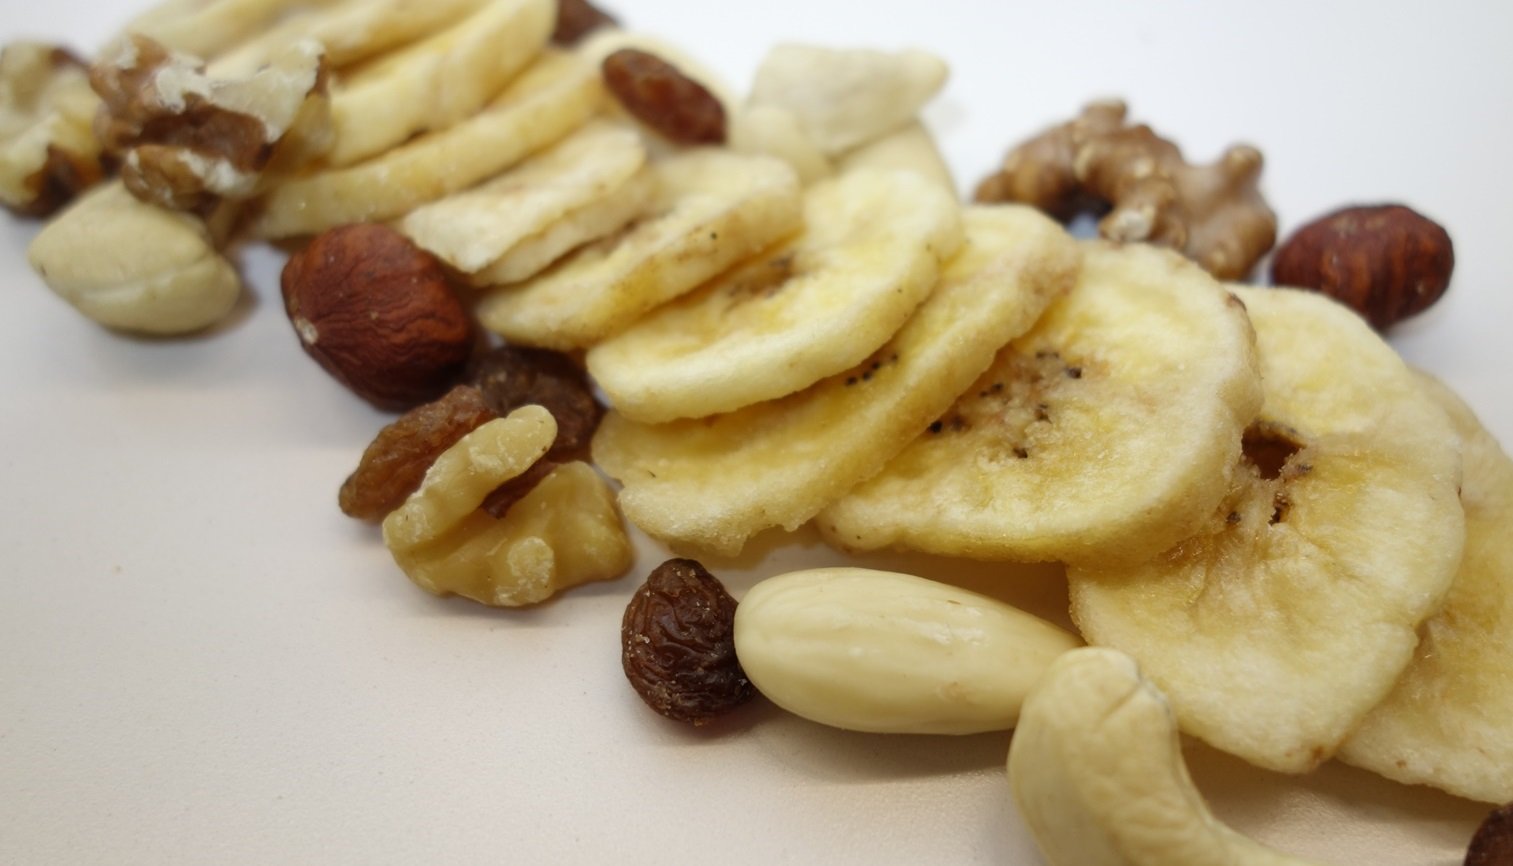 DSC01333 - Superfood Nüsse, Kerne, Früchte und Co